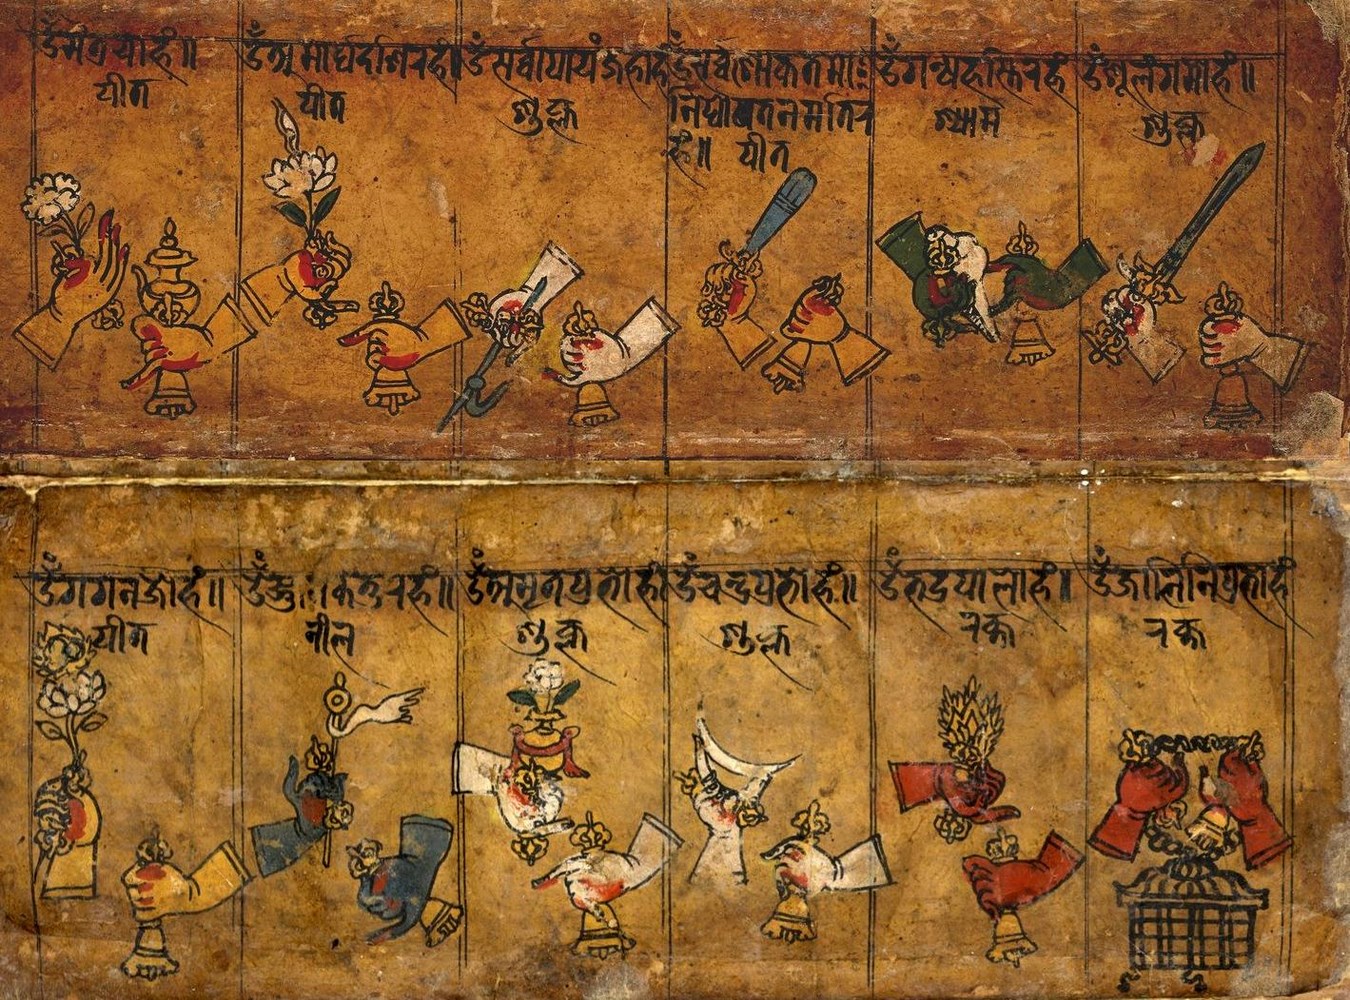 Fig. 7. Mudra, série C, quatre Bodhisattva, quatre gardiens de portes, quatre Tathāgata de la série suivante : Vajragarbga, Akṣayamati, Pratibhānakūta, Samantabhadra, Vajrāṃskuśa, Vajrāpaśa, Vajrasphota, Vajrāveśa ; Vairocana, Akṣobhya, Ratnasambhava, Amitābha appartiennent à la série suivante.